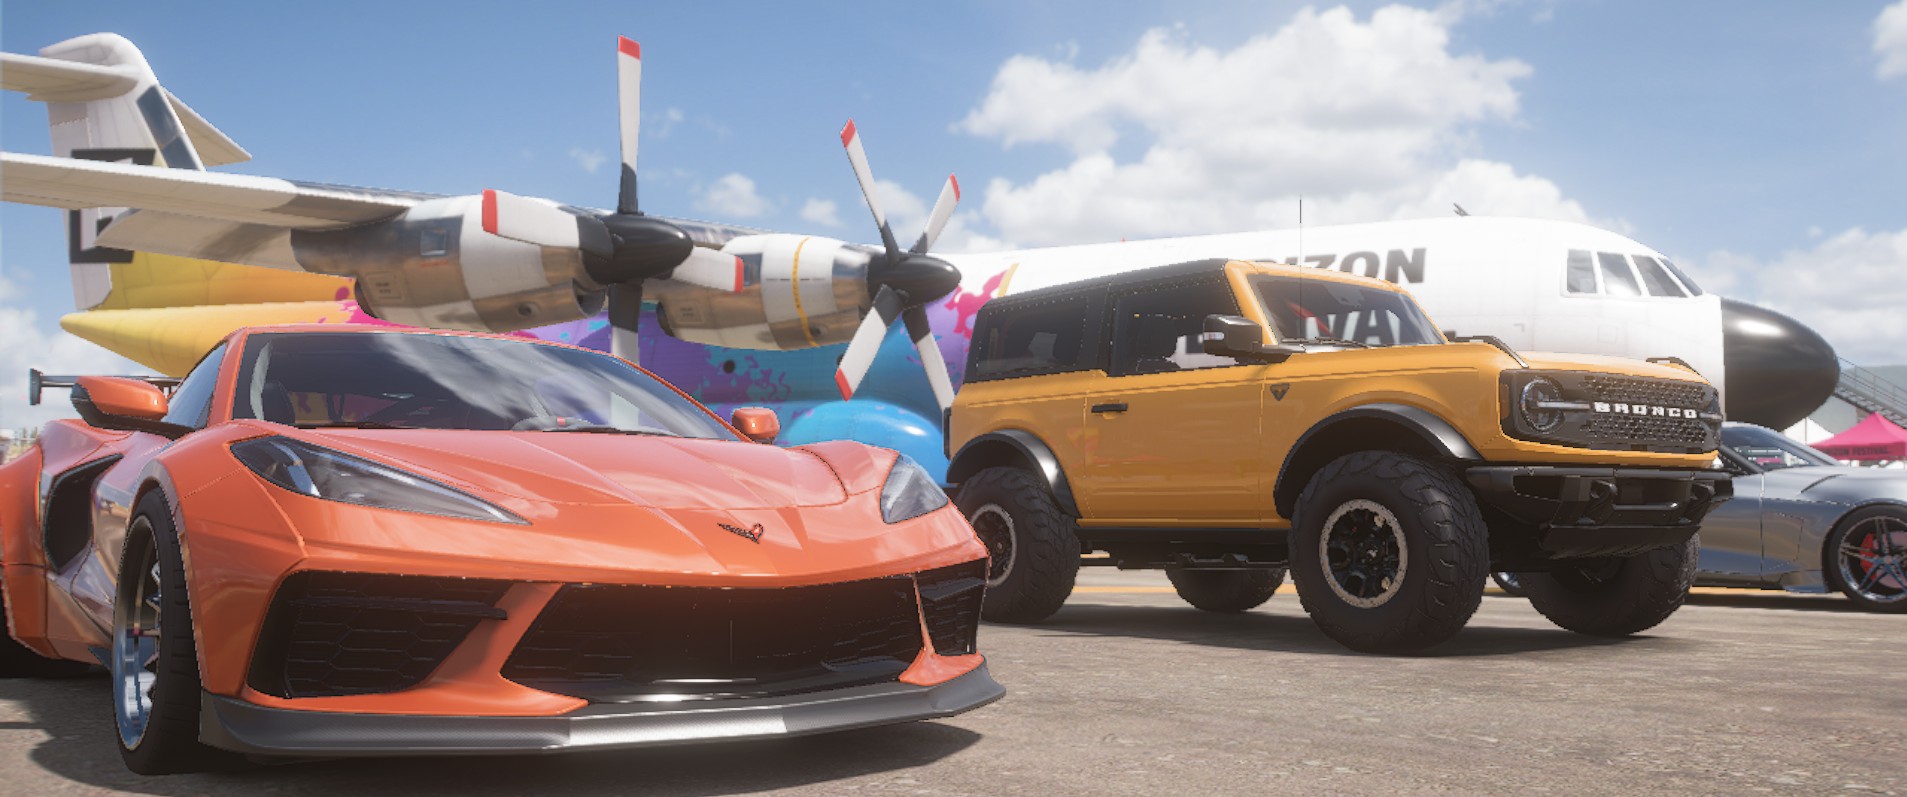 Forza Horizon 5 Pc Intro Cars